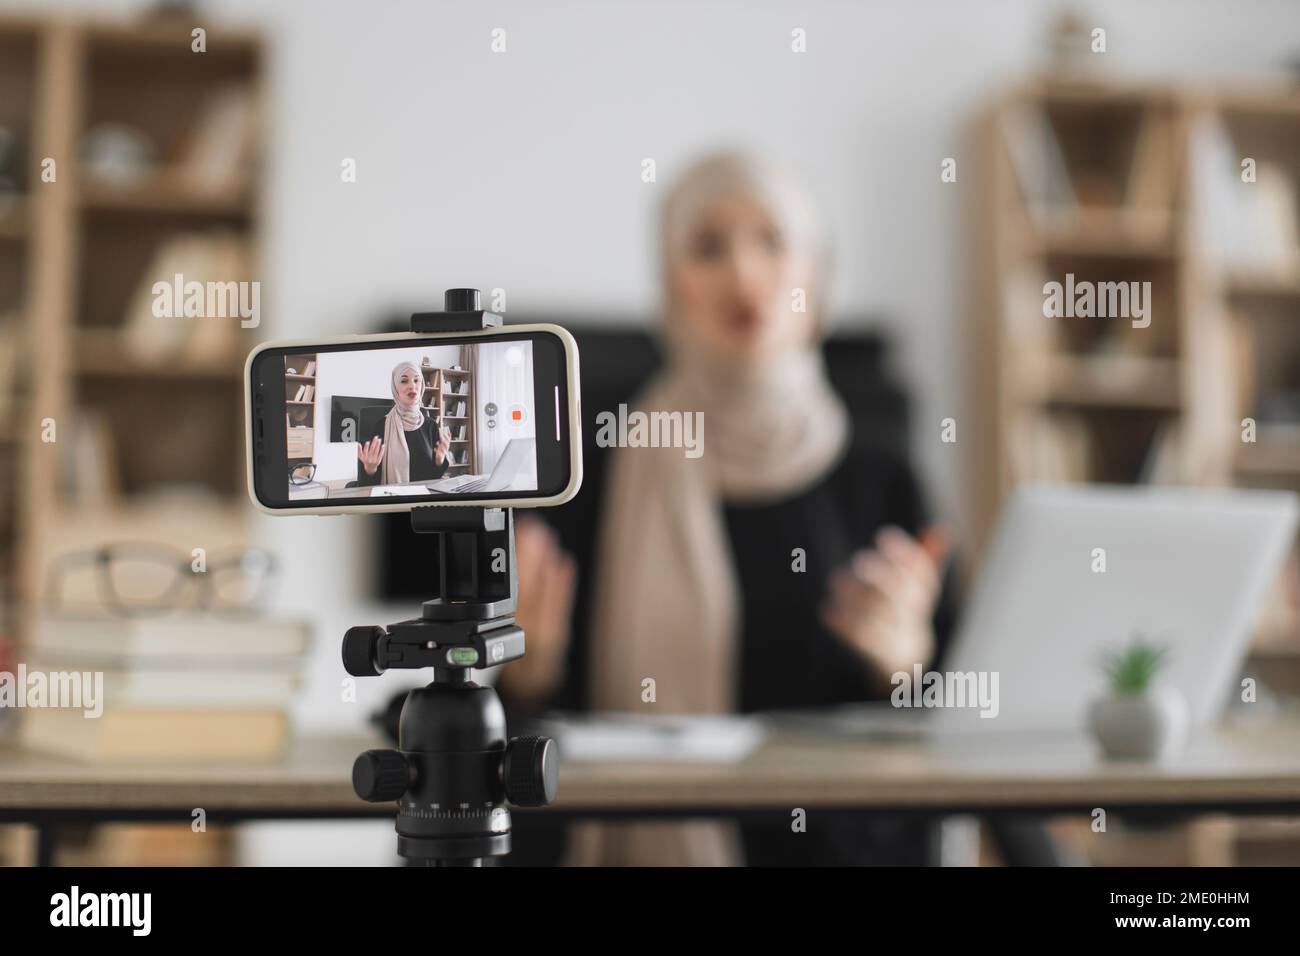 Hướng dẫn cách Video background blur mobile Cho hiệu ứng video chân thực